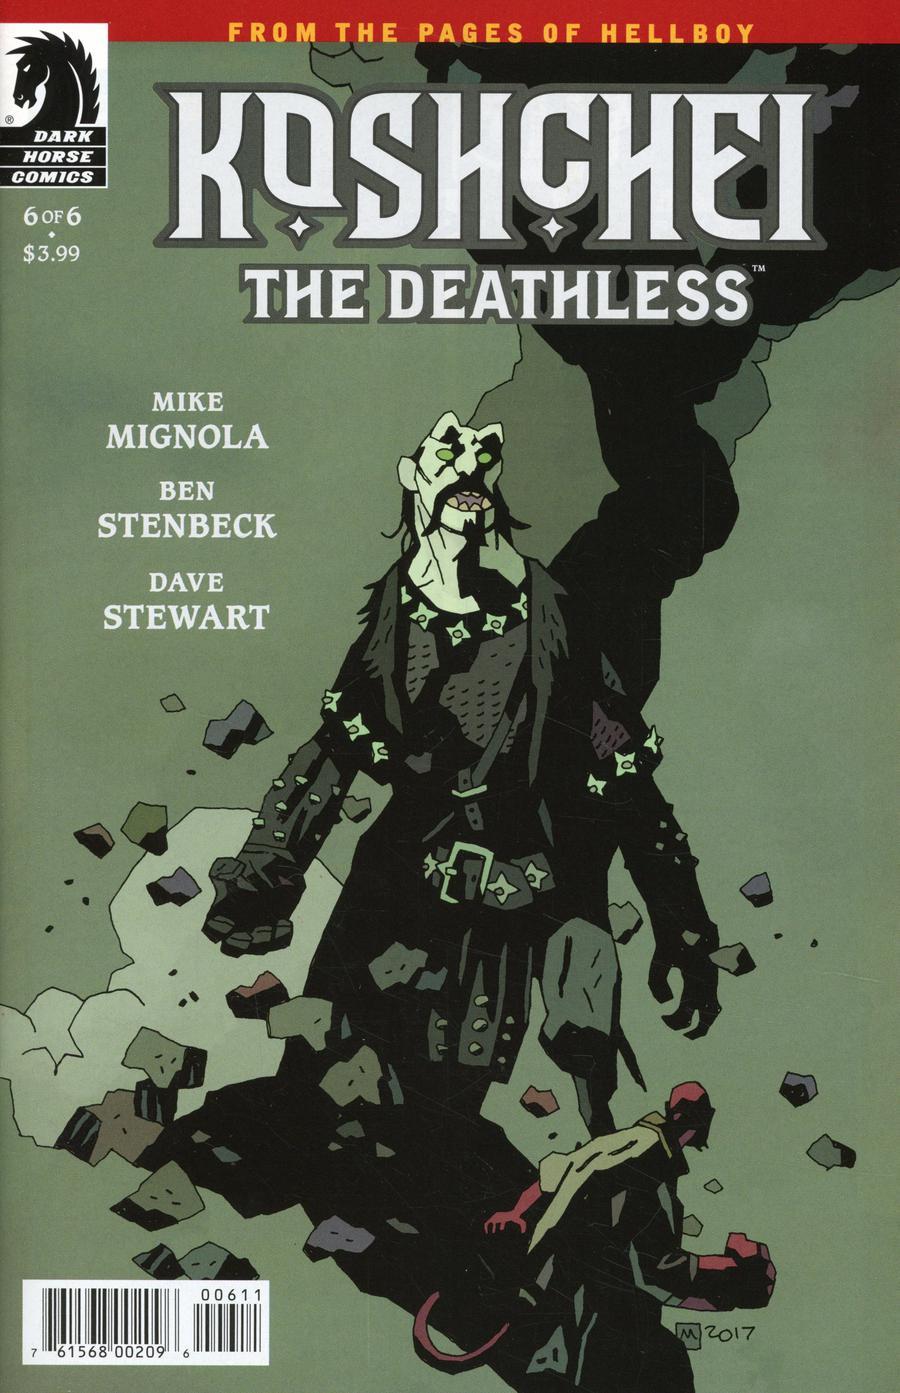 Koshchei The Deathless Vol. 1 #6